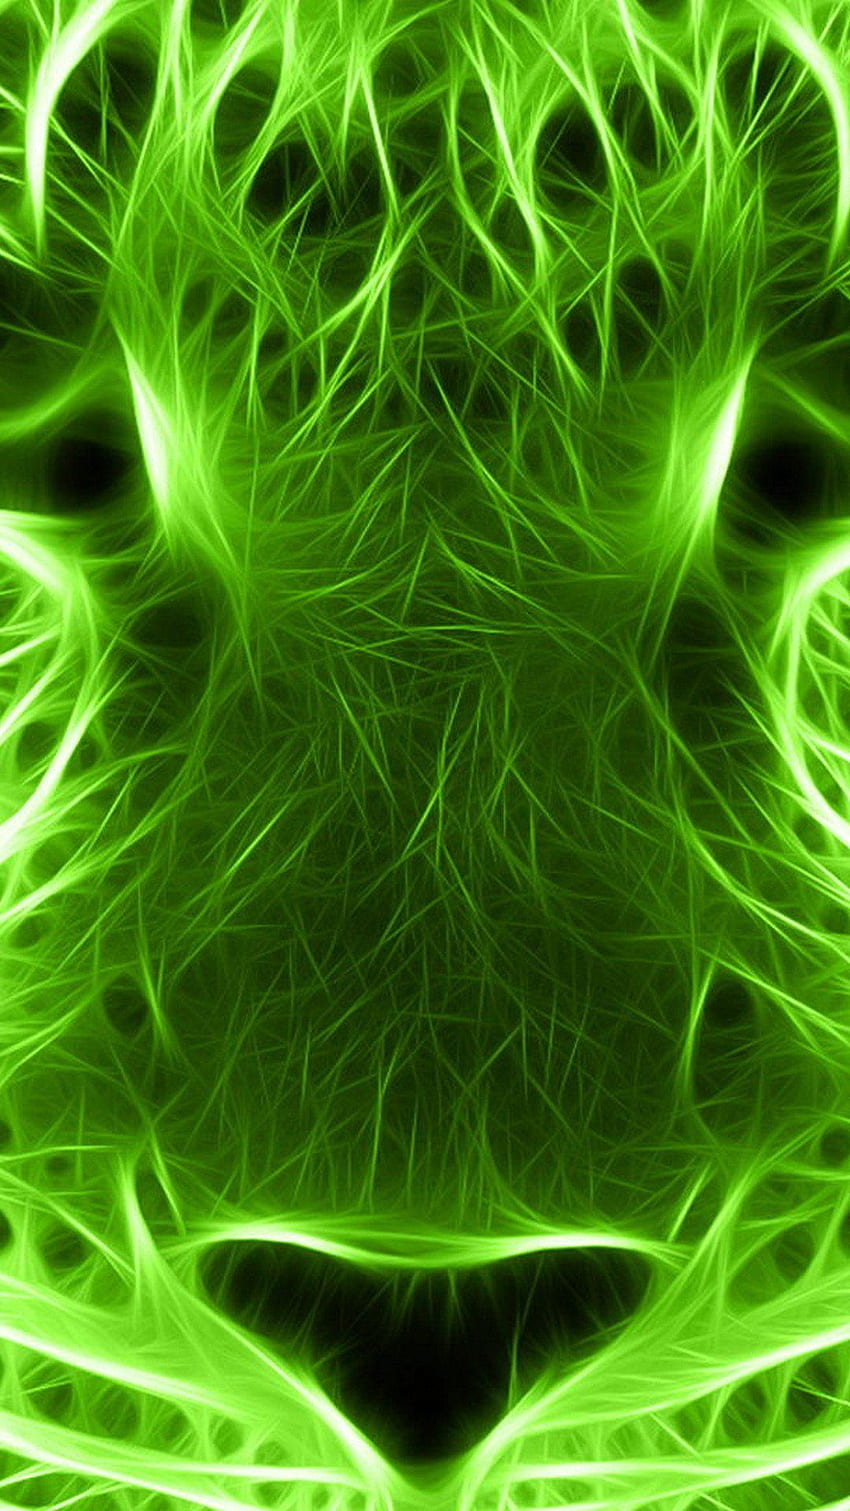 iPhone verde neón, verde fluorescente fondo de pantalla del teléfono